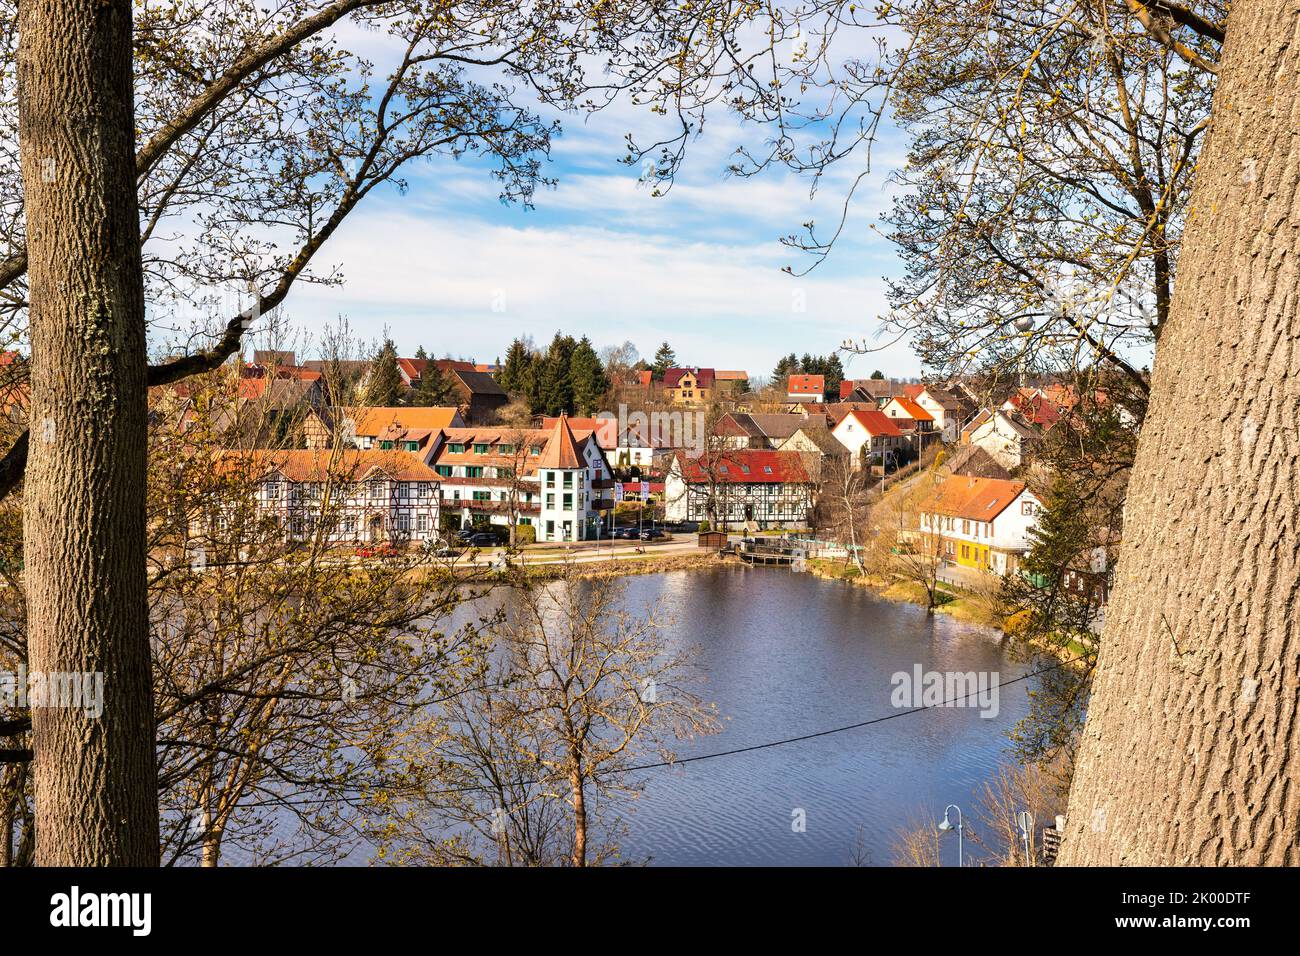 Impressionen aus Stiege im Harz Stadt Oberharz am Brocken Foto de stock